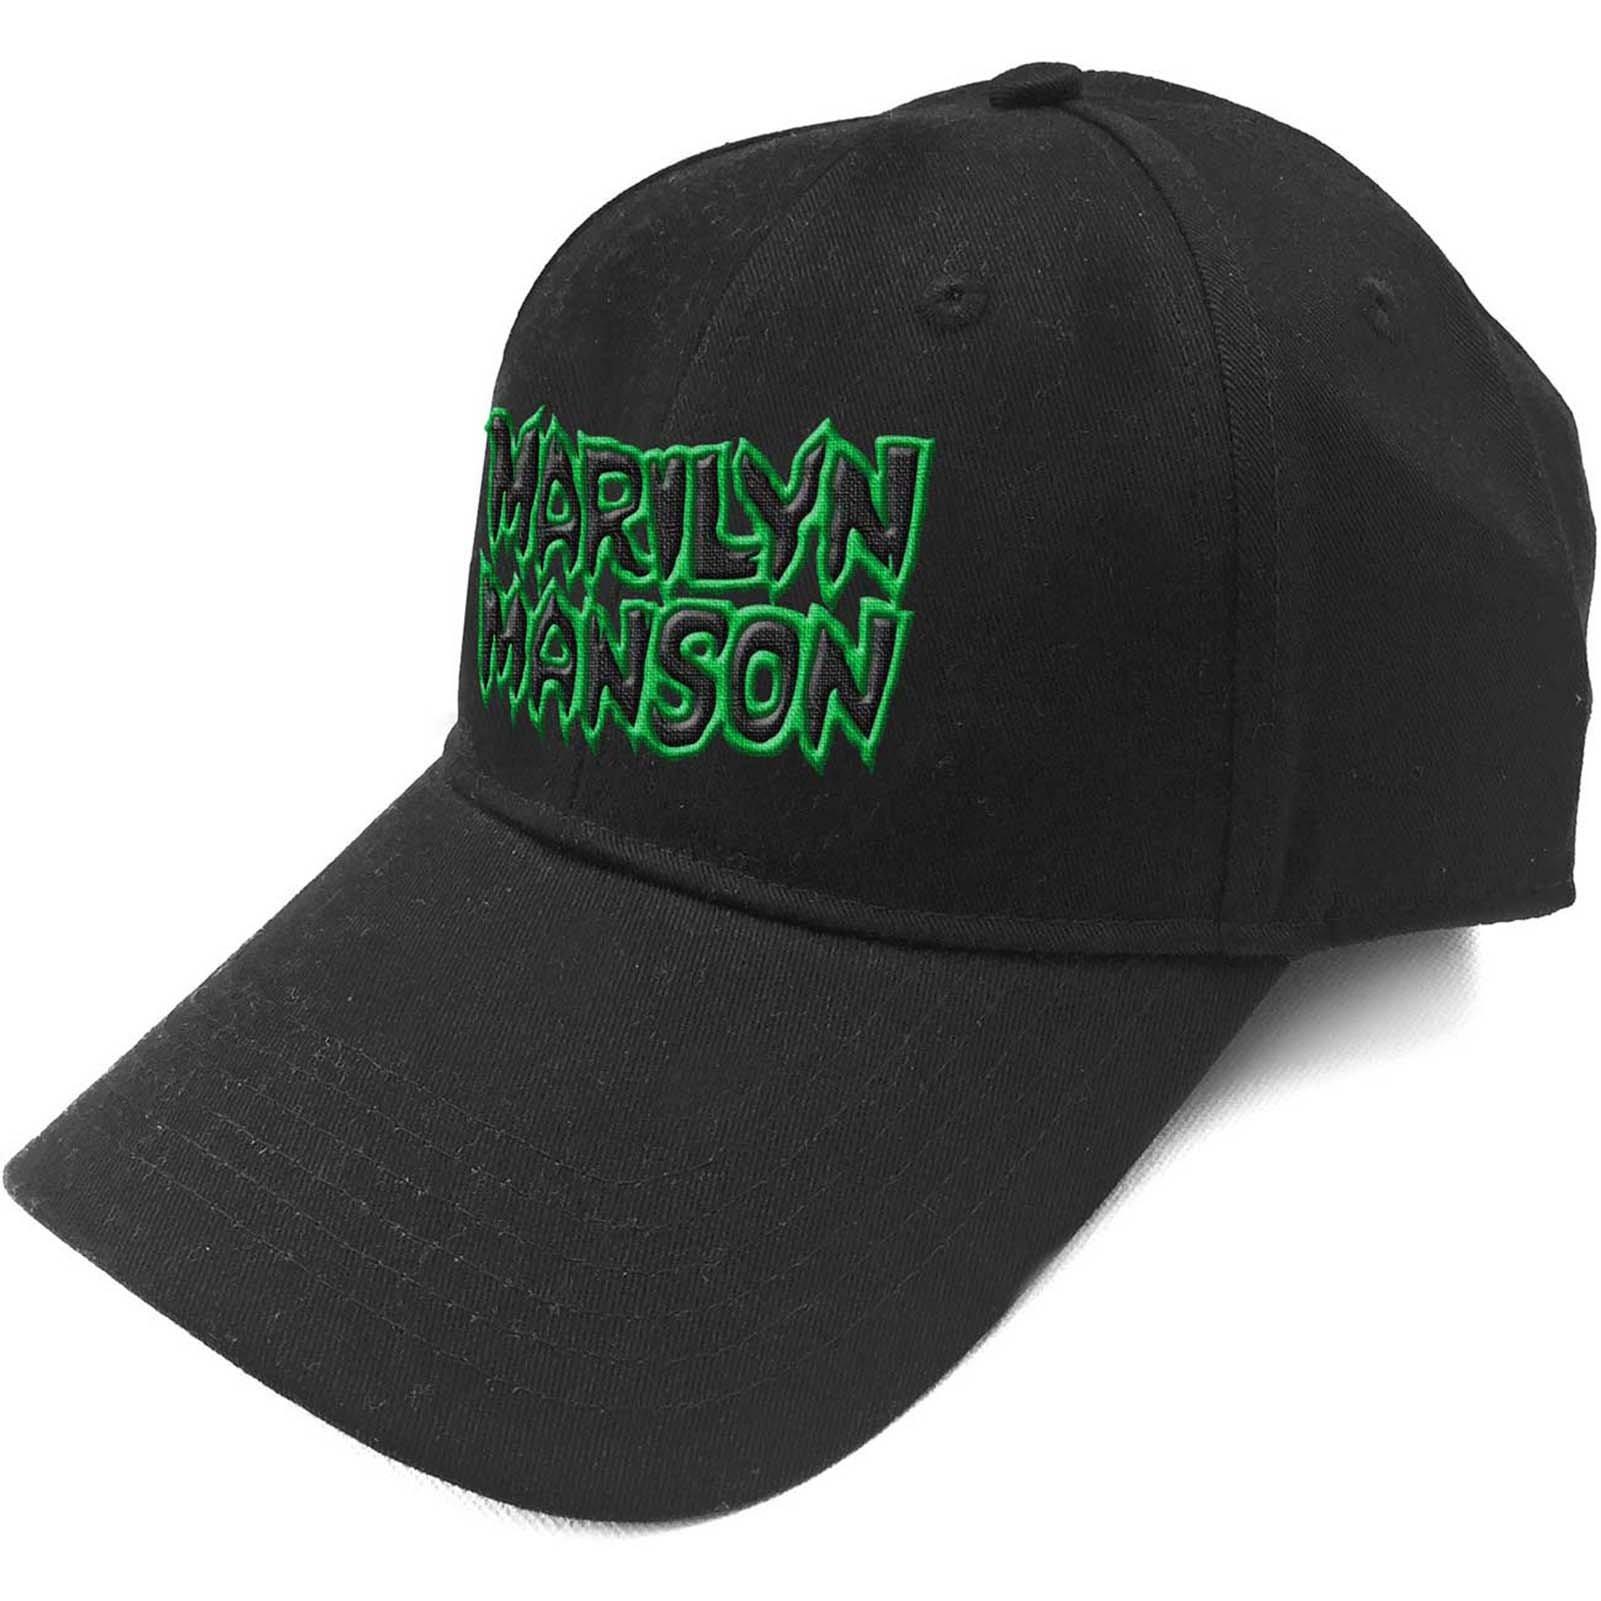 Бейсбольная кепка с текстовым логотипом и ремешком на спине Marilyn Manson, черный кепка ncis с вышивкой кепка с логотипом спецагентов кепка с логотипом военно морской полиции кепка кино кепка регулируемая бейсболка кепка